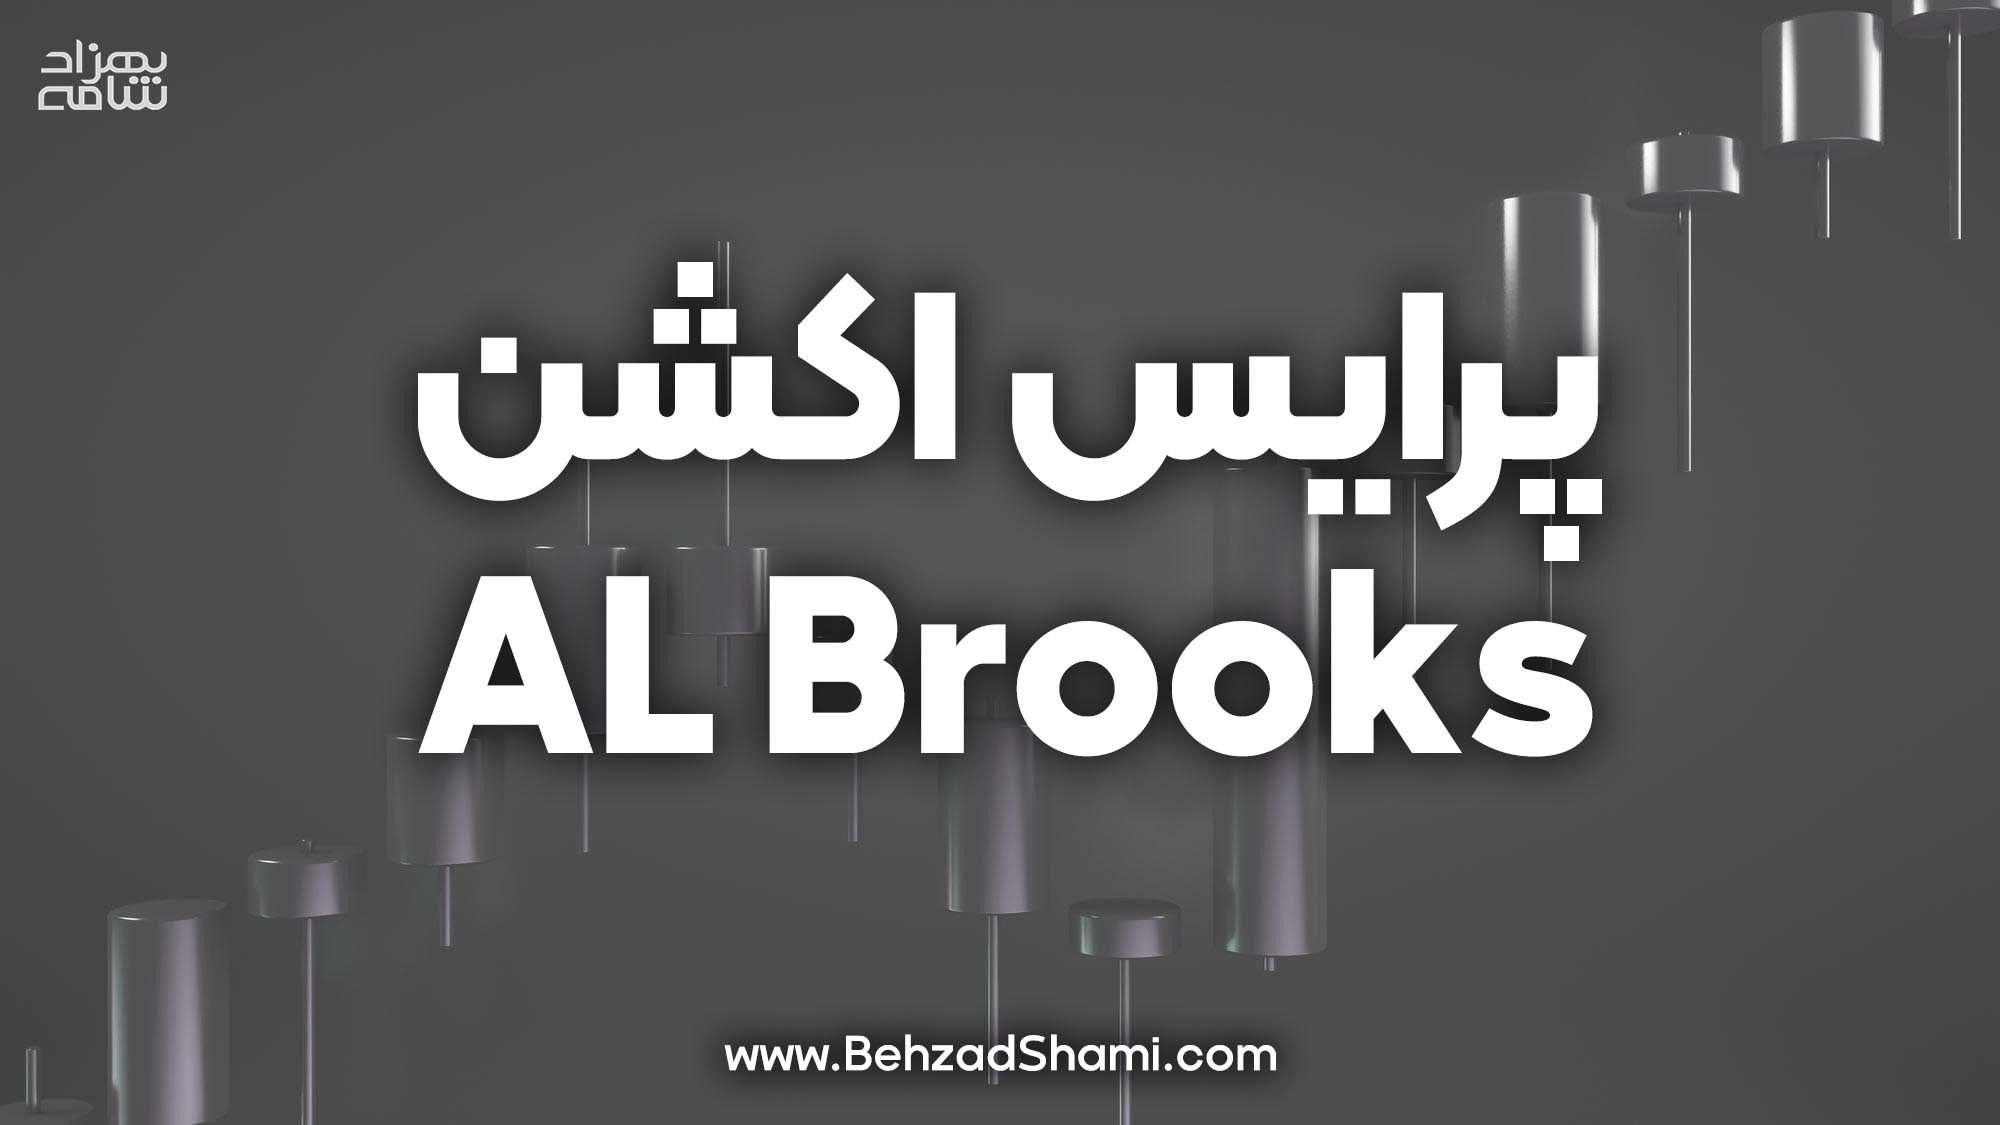 پرایس اکشن ال بروکس AL Brooks